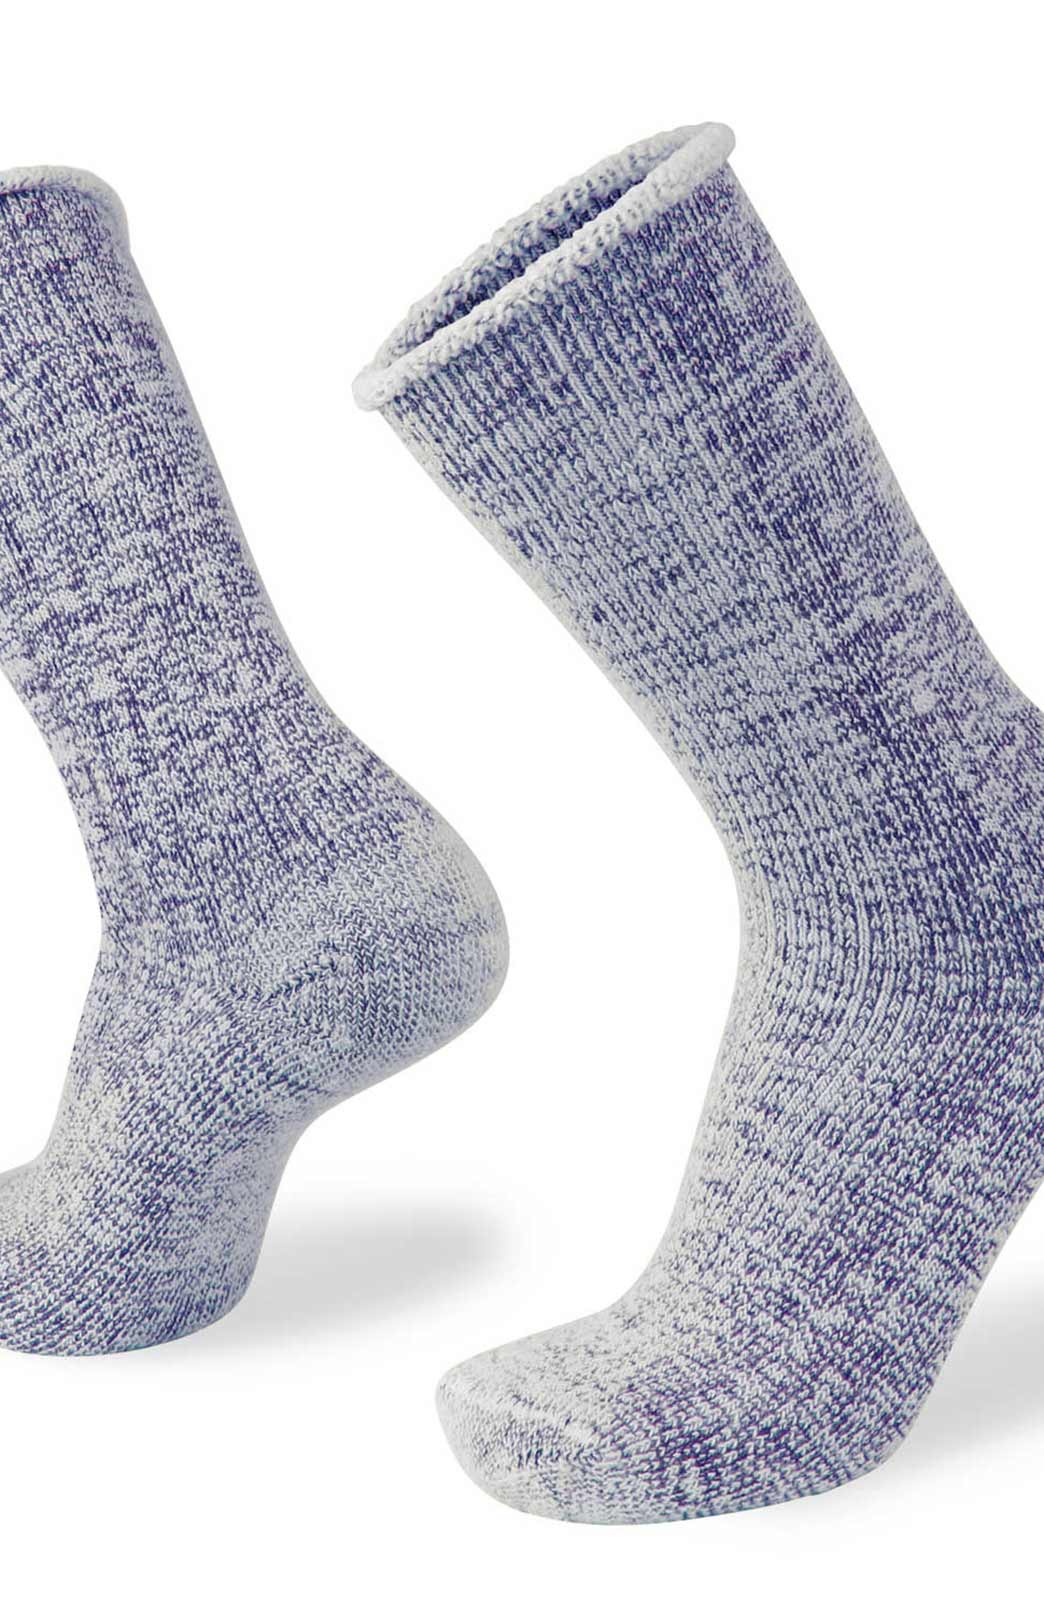 Men's Merino Wool Thermal Underwear and Socks